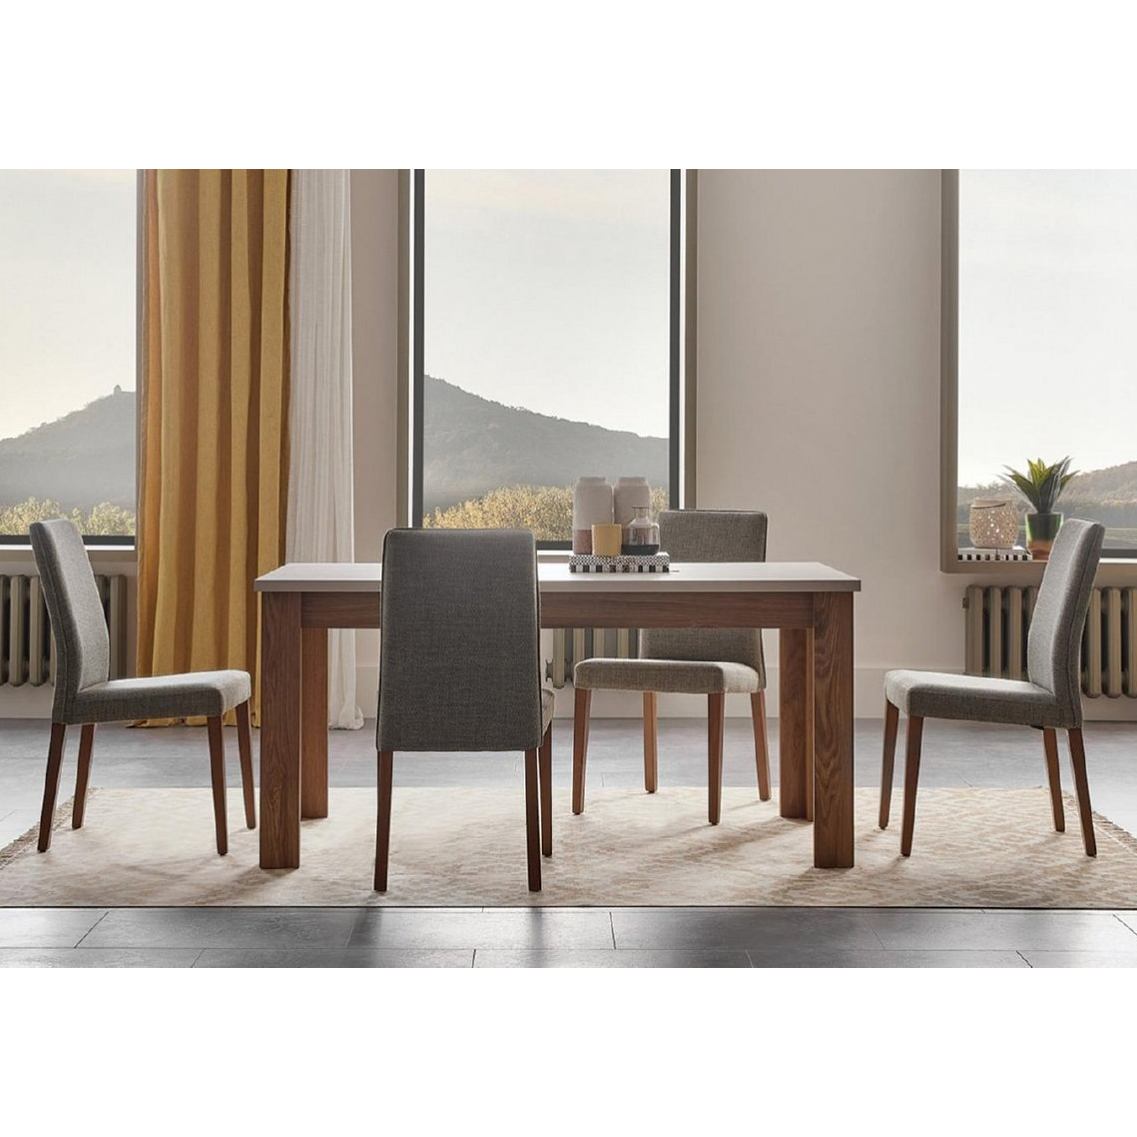 Стол обеденный Enza Home Loreto, прямоугольный, размер 160х90х76 смEH57545